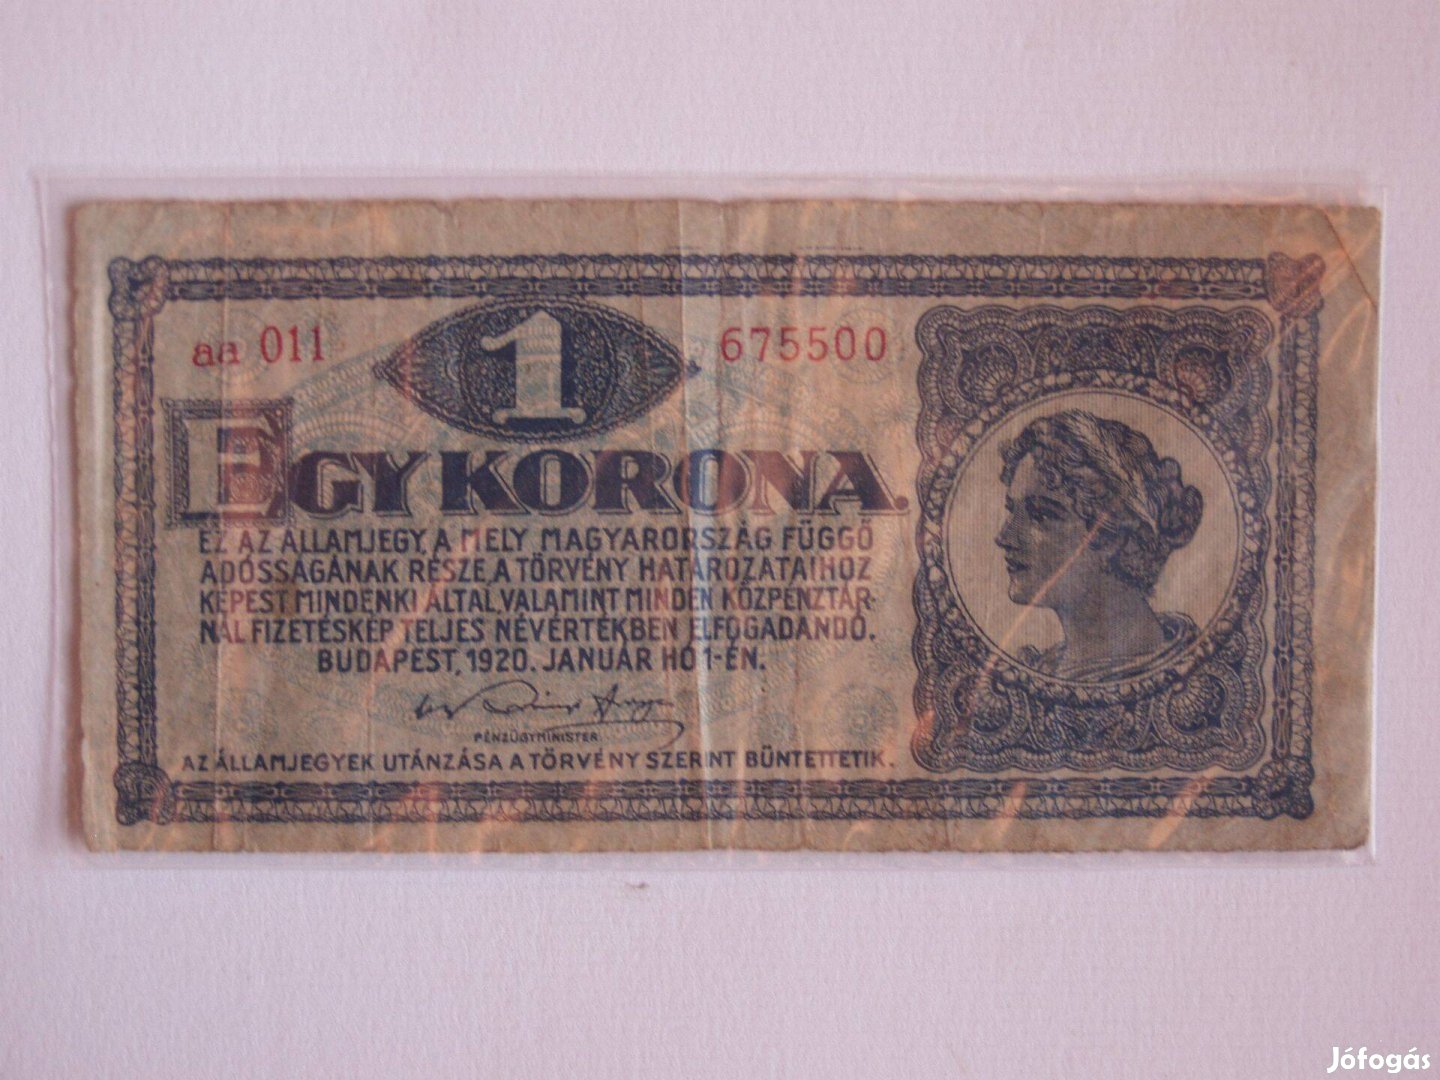 1 korona, 1920-as évjáratú, VG állapot! aa011-es sorozat